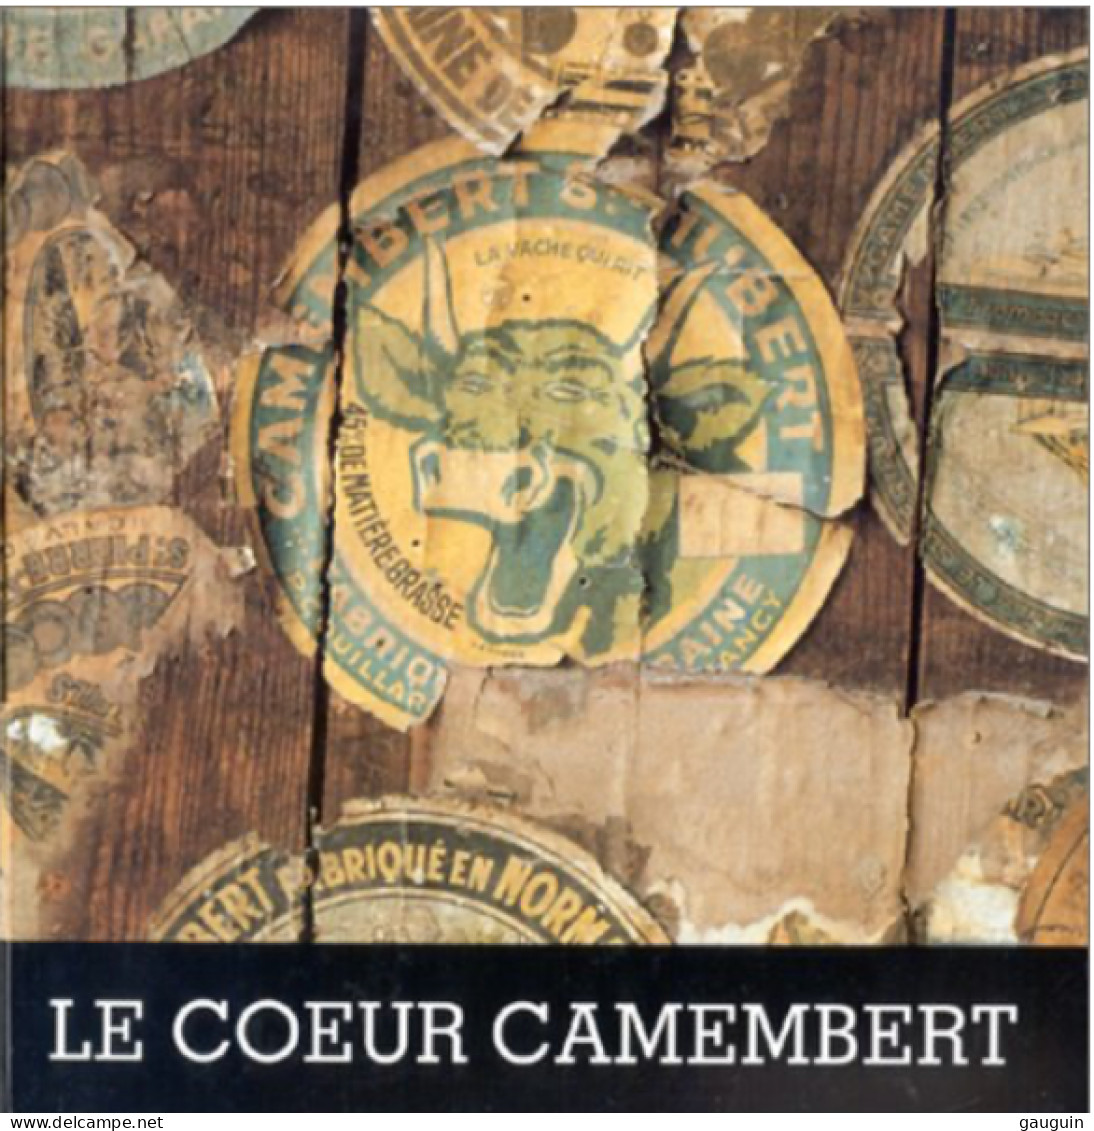 LIVRE - Le "COEUR CAMEMBERT" De O.THIEBAUT - Nombreuses Illustrations Etiquettes Fromages - 107p /1993 - Editions ISOÈTE - Normandie